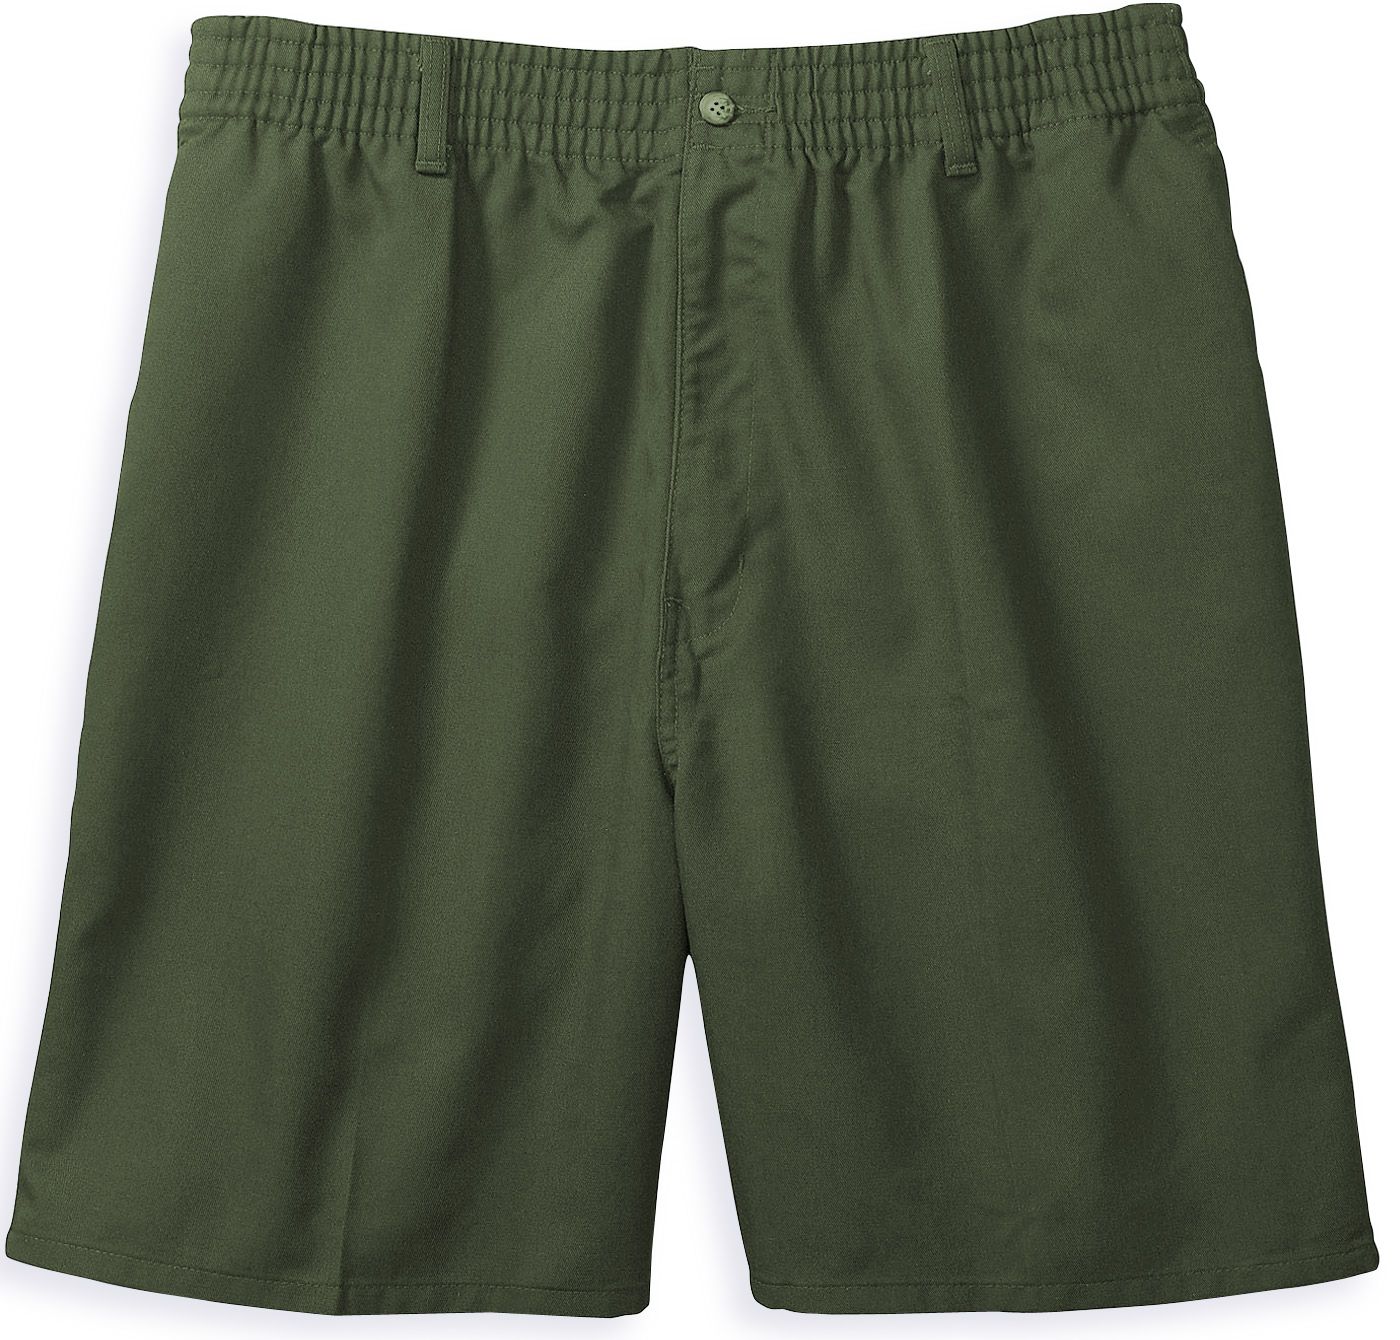 Harbor Bay Men's Elastic Waist Shorts - Big & Tall